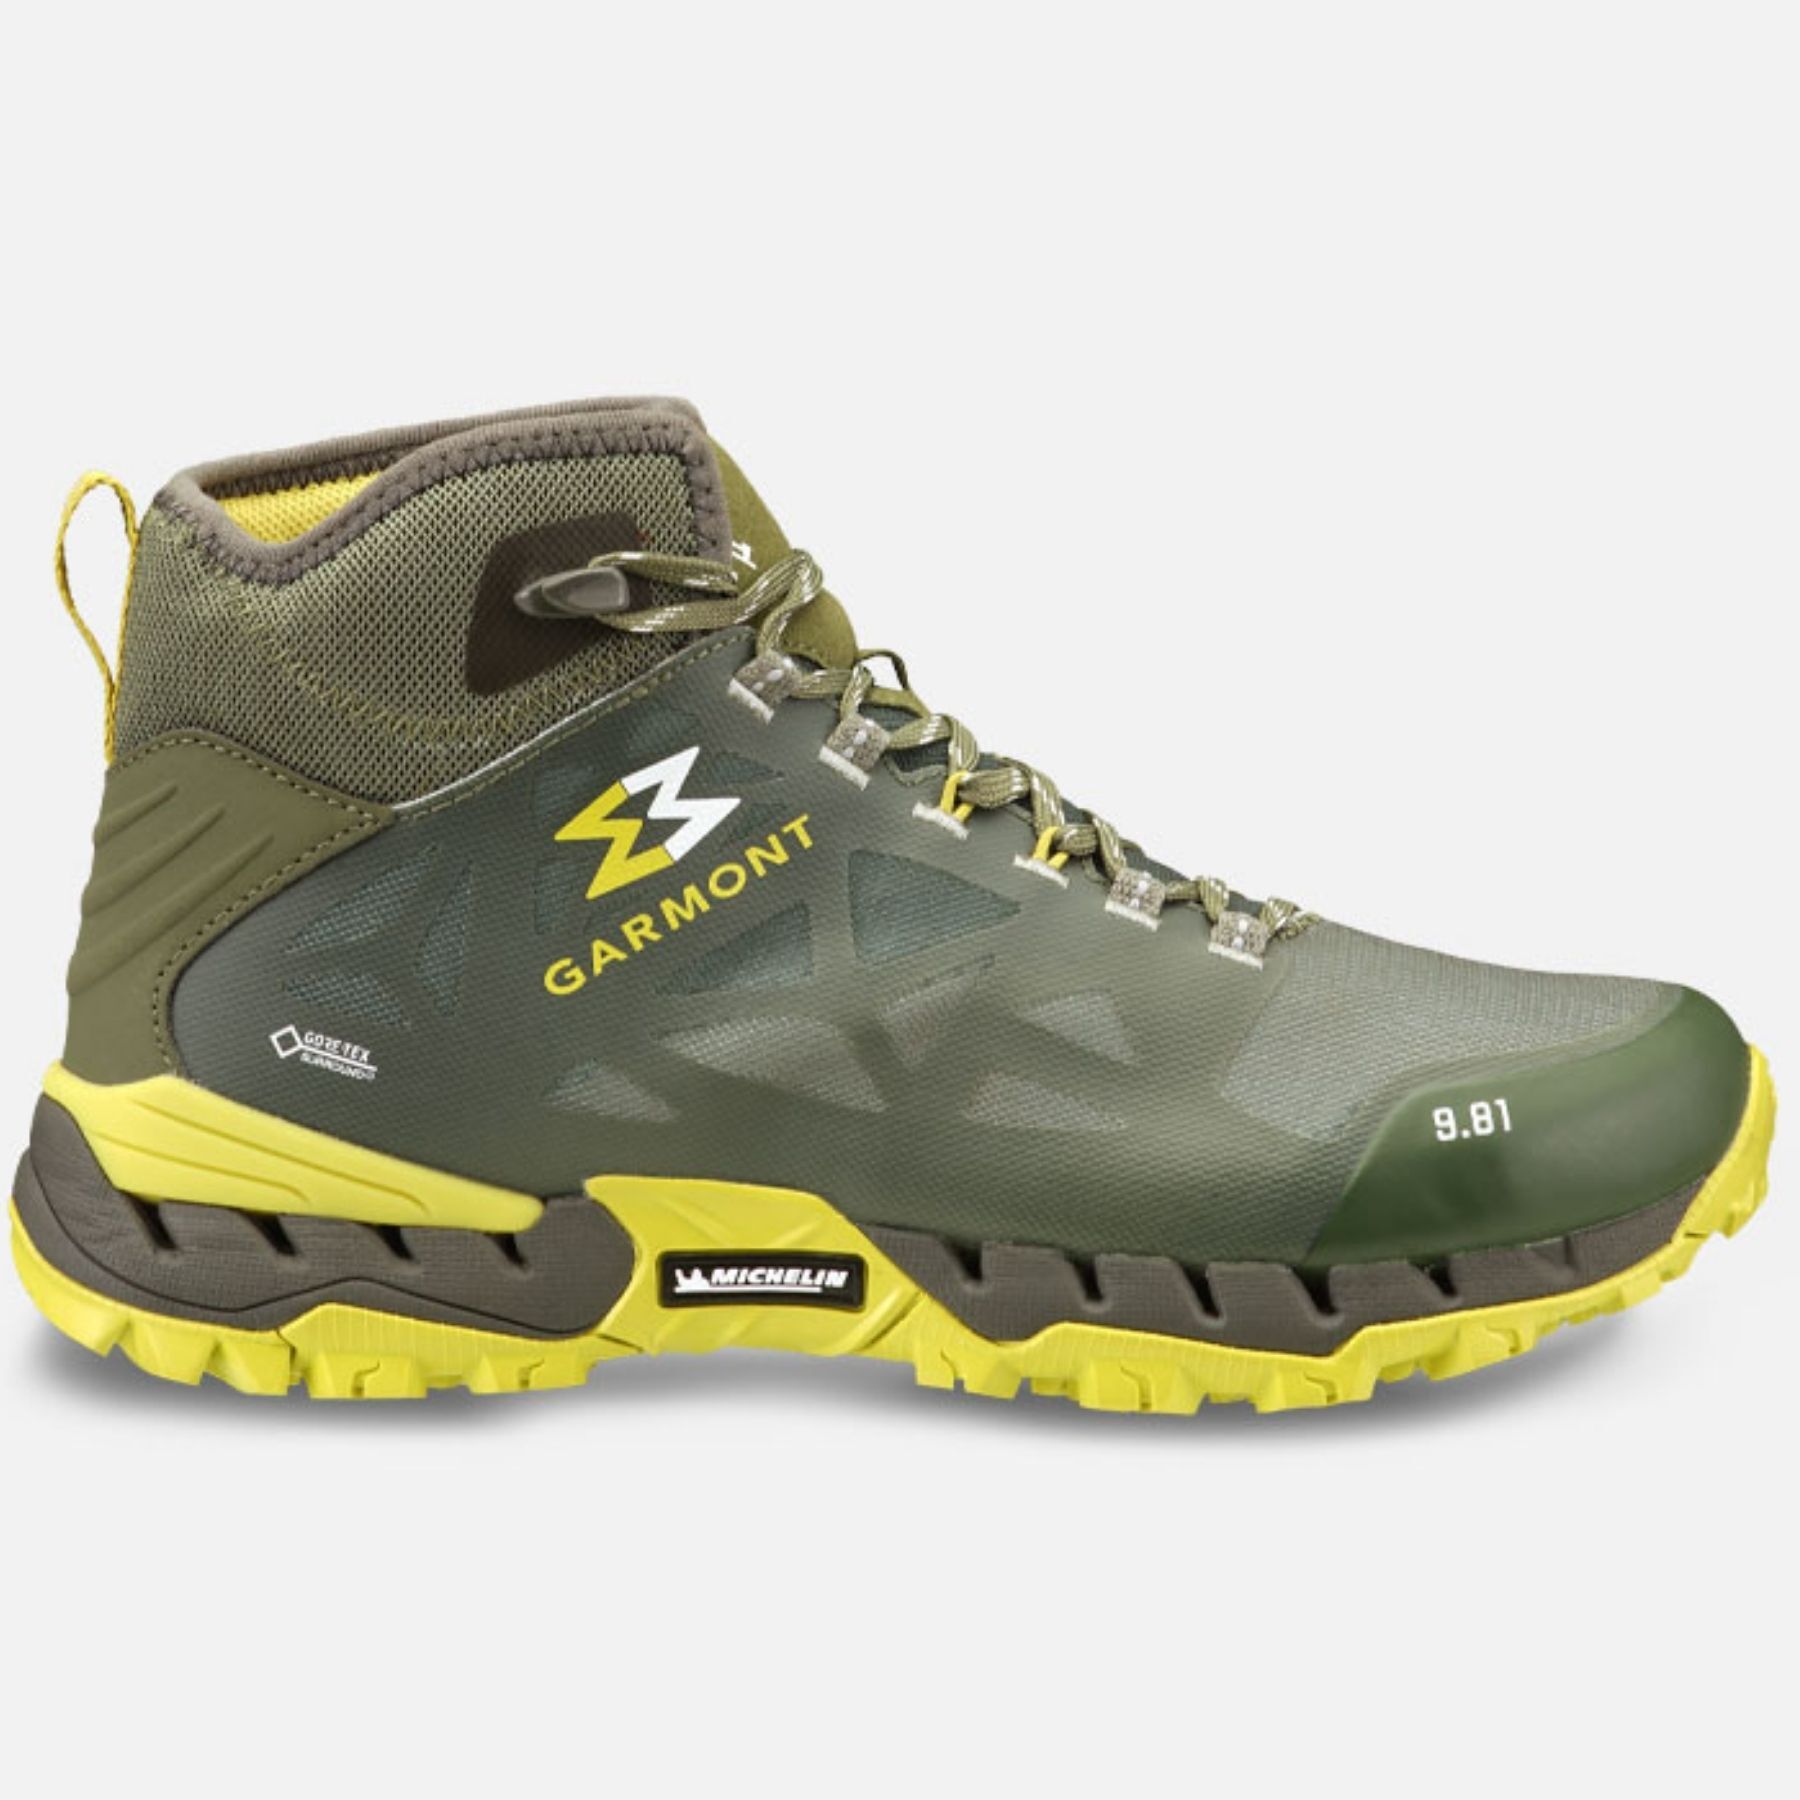 Garmont 9.81 N Air G 2.0 Mid GTX - Hiking shoes - Men's